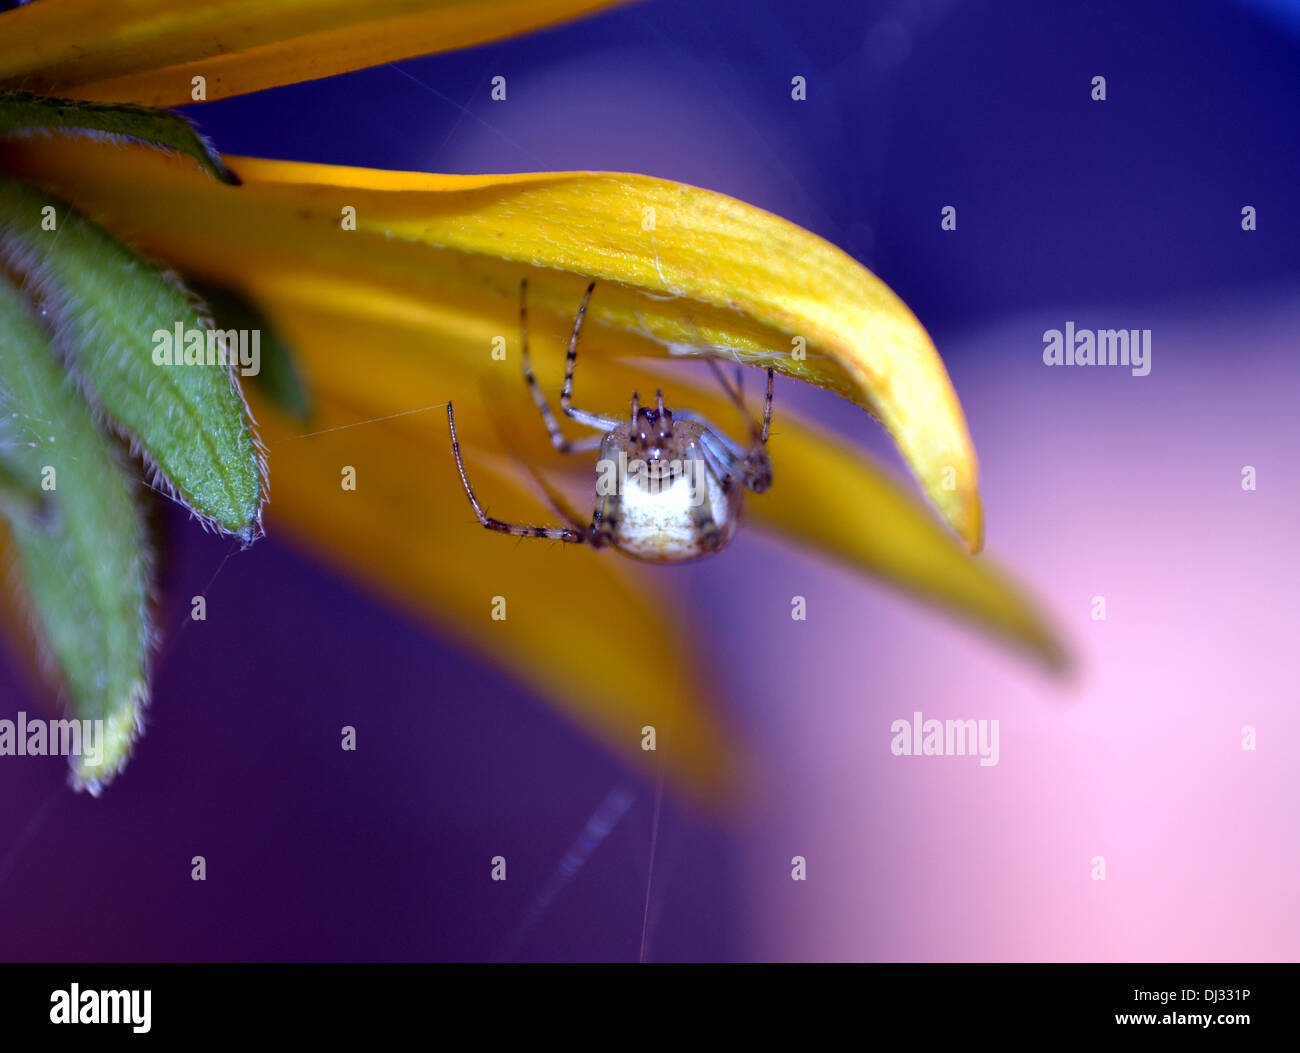 Garden spider weaving a web under the petal of a Rudbeckia flower Stock Photo